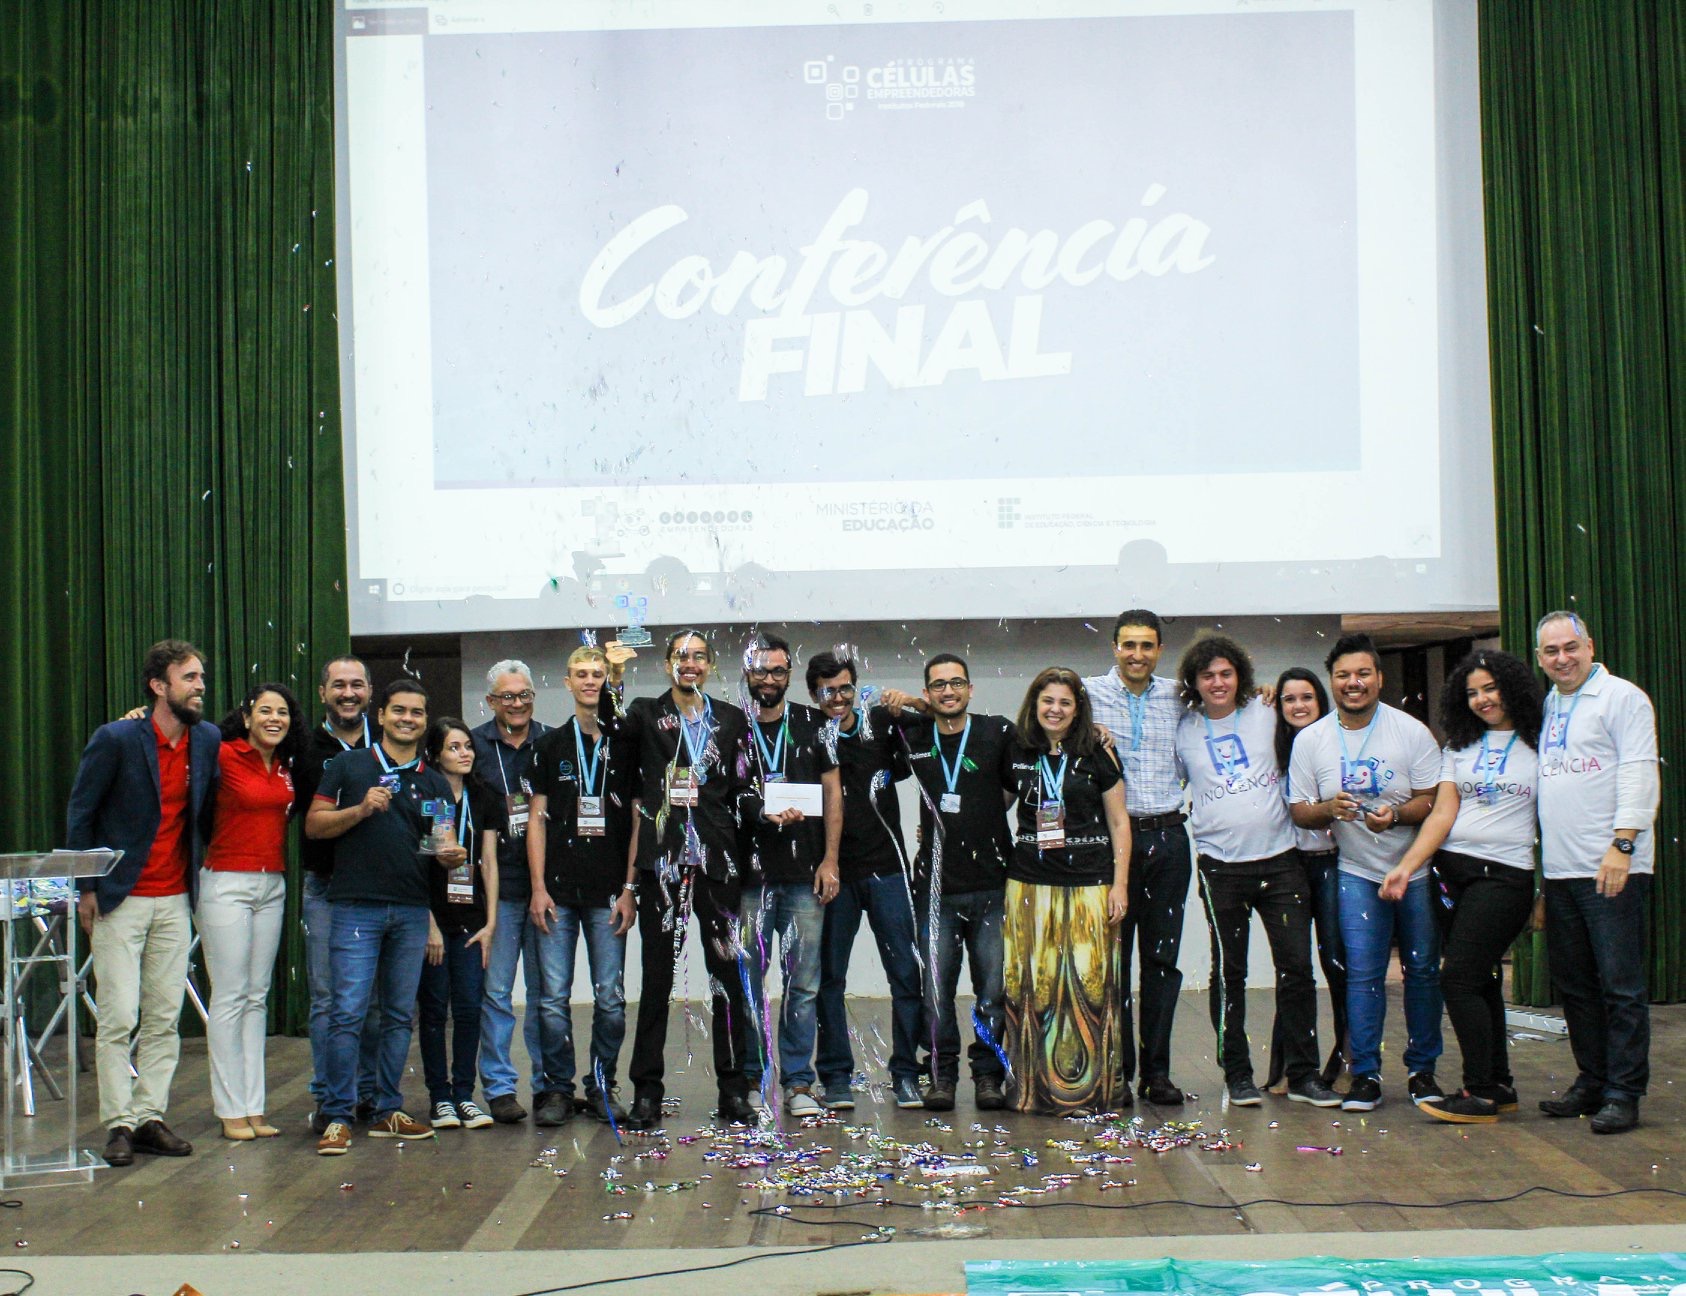 Conferência final apresentou os vencedores